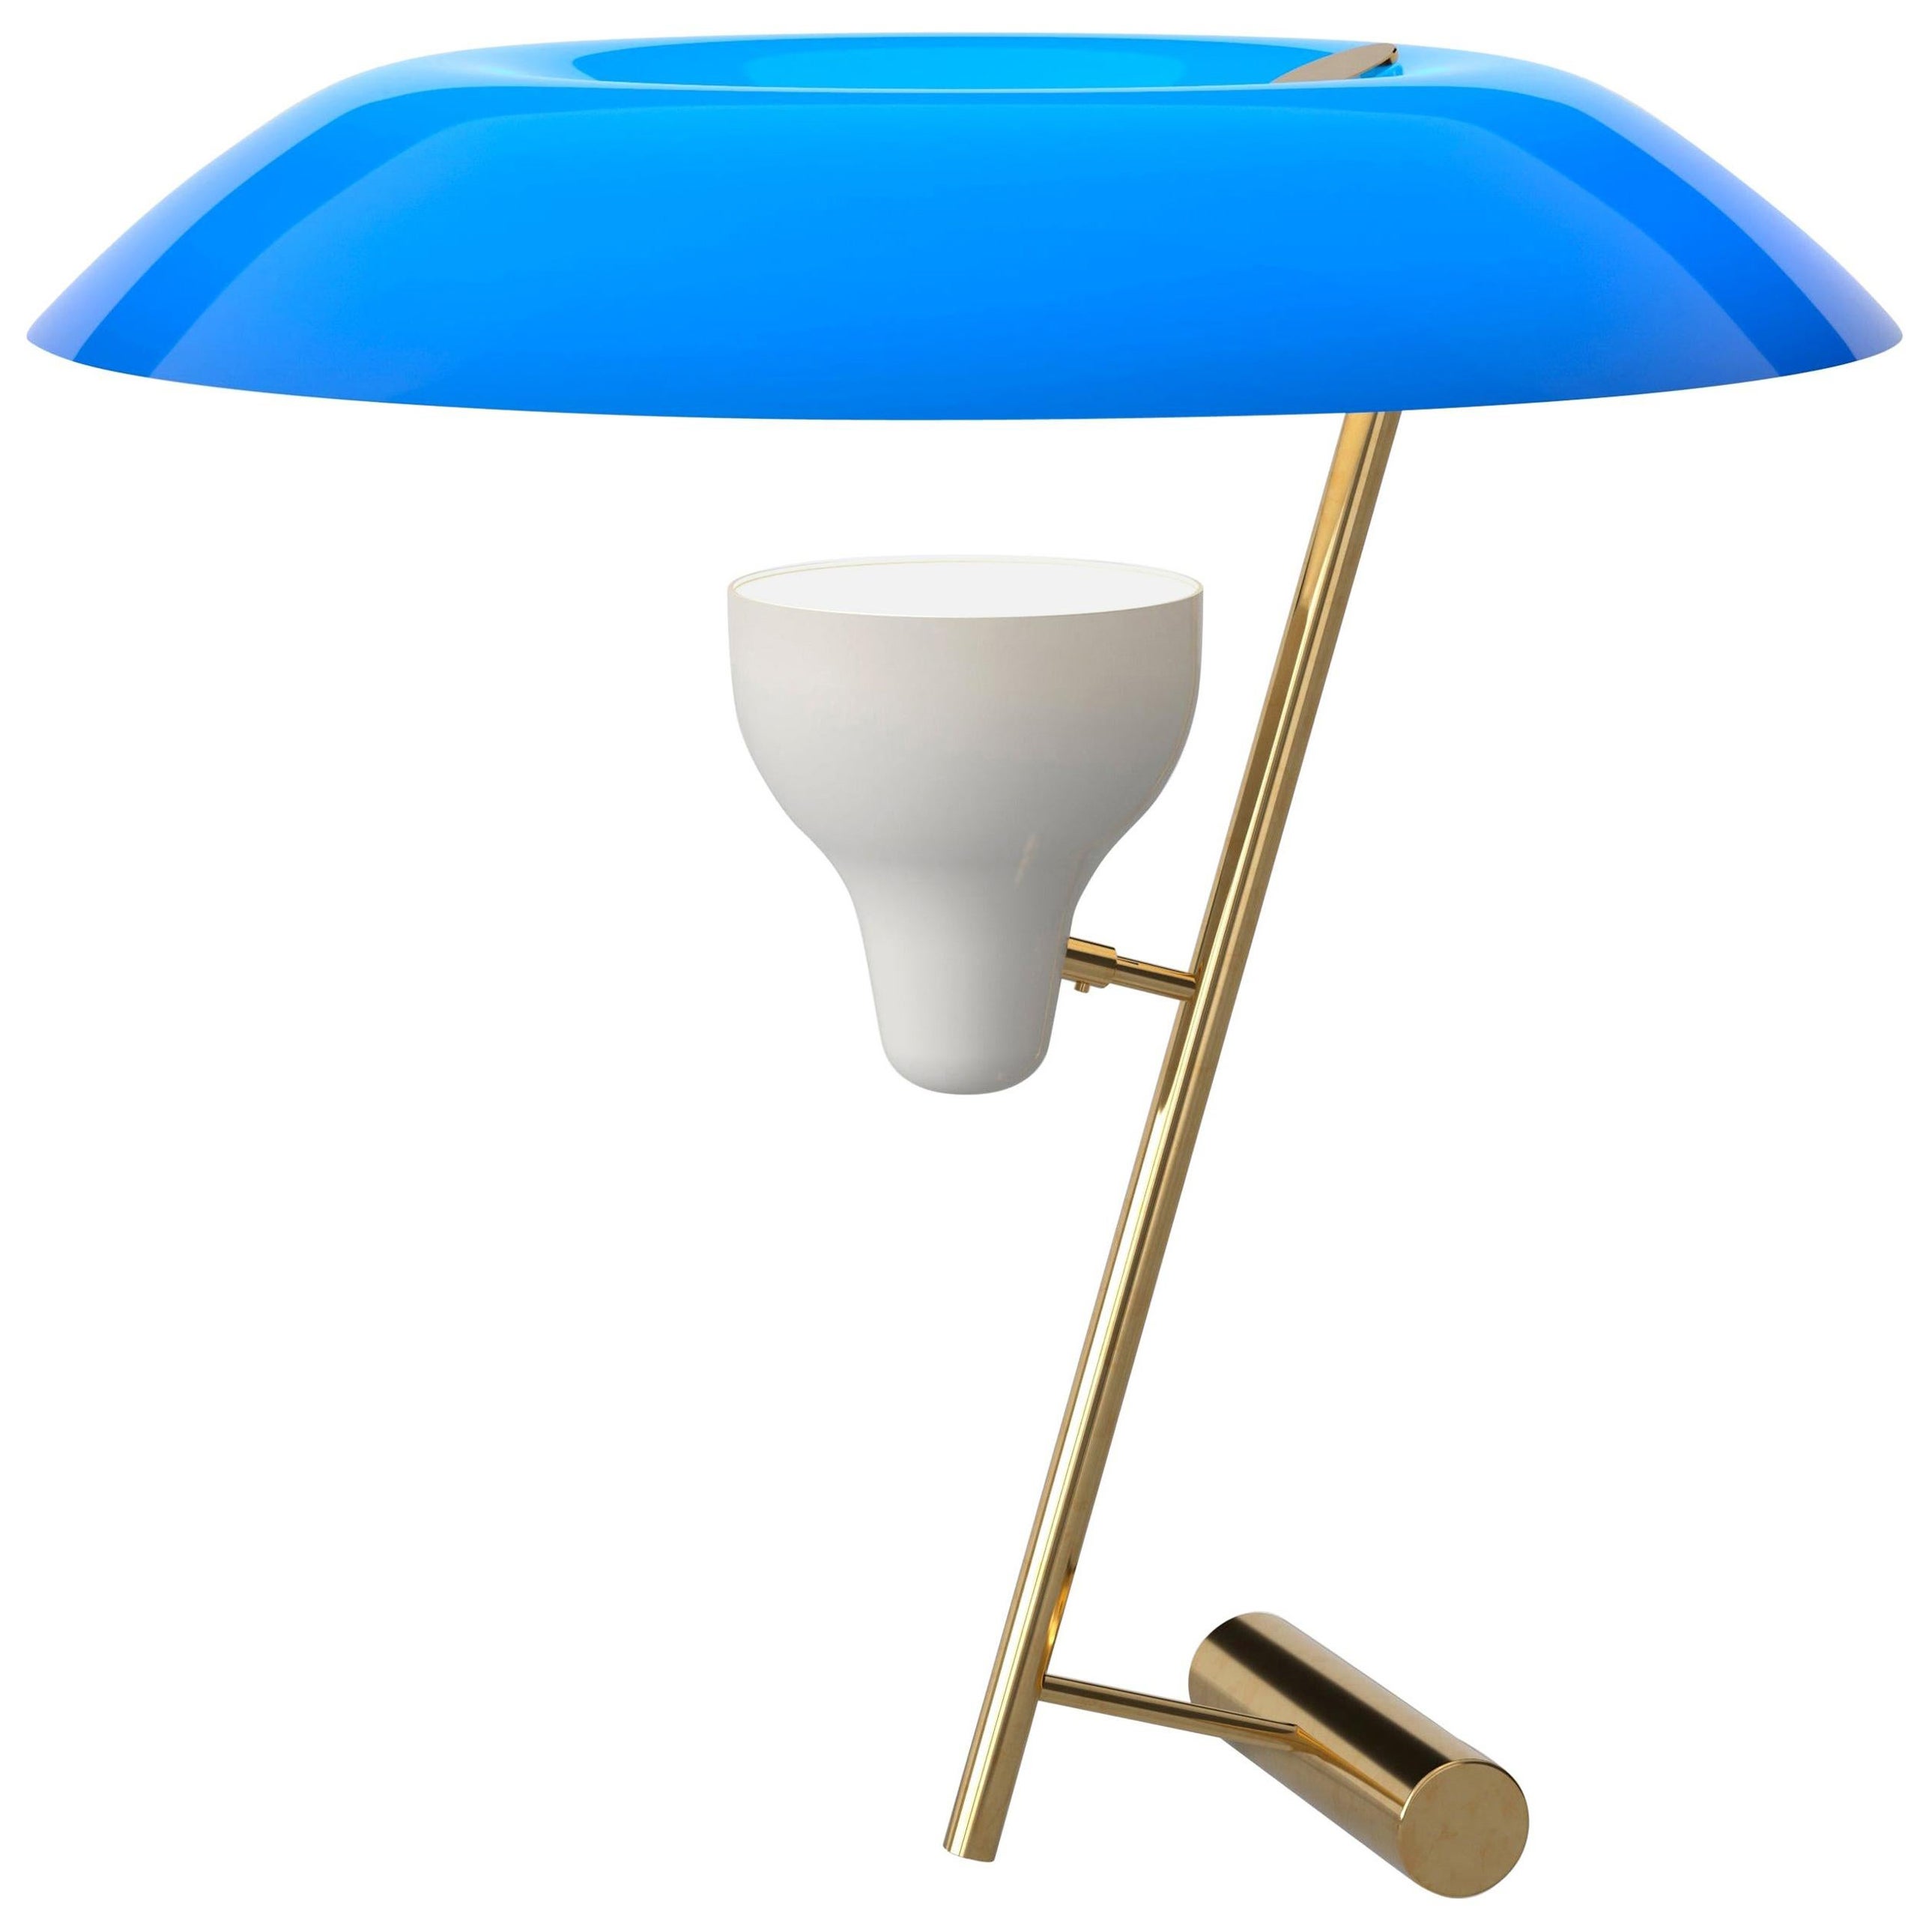 Gino Sarfatti-Lampe Modell 548, poliertes Messing mit blauem Futter von Astep